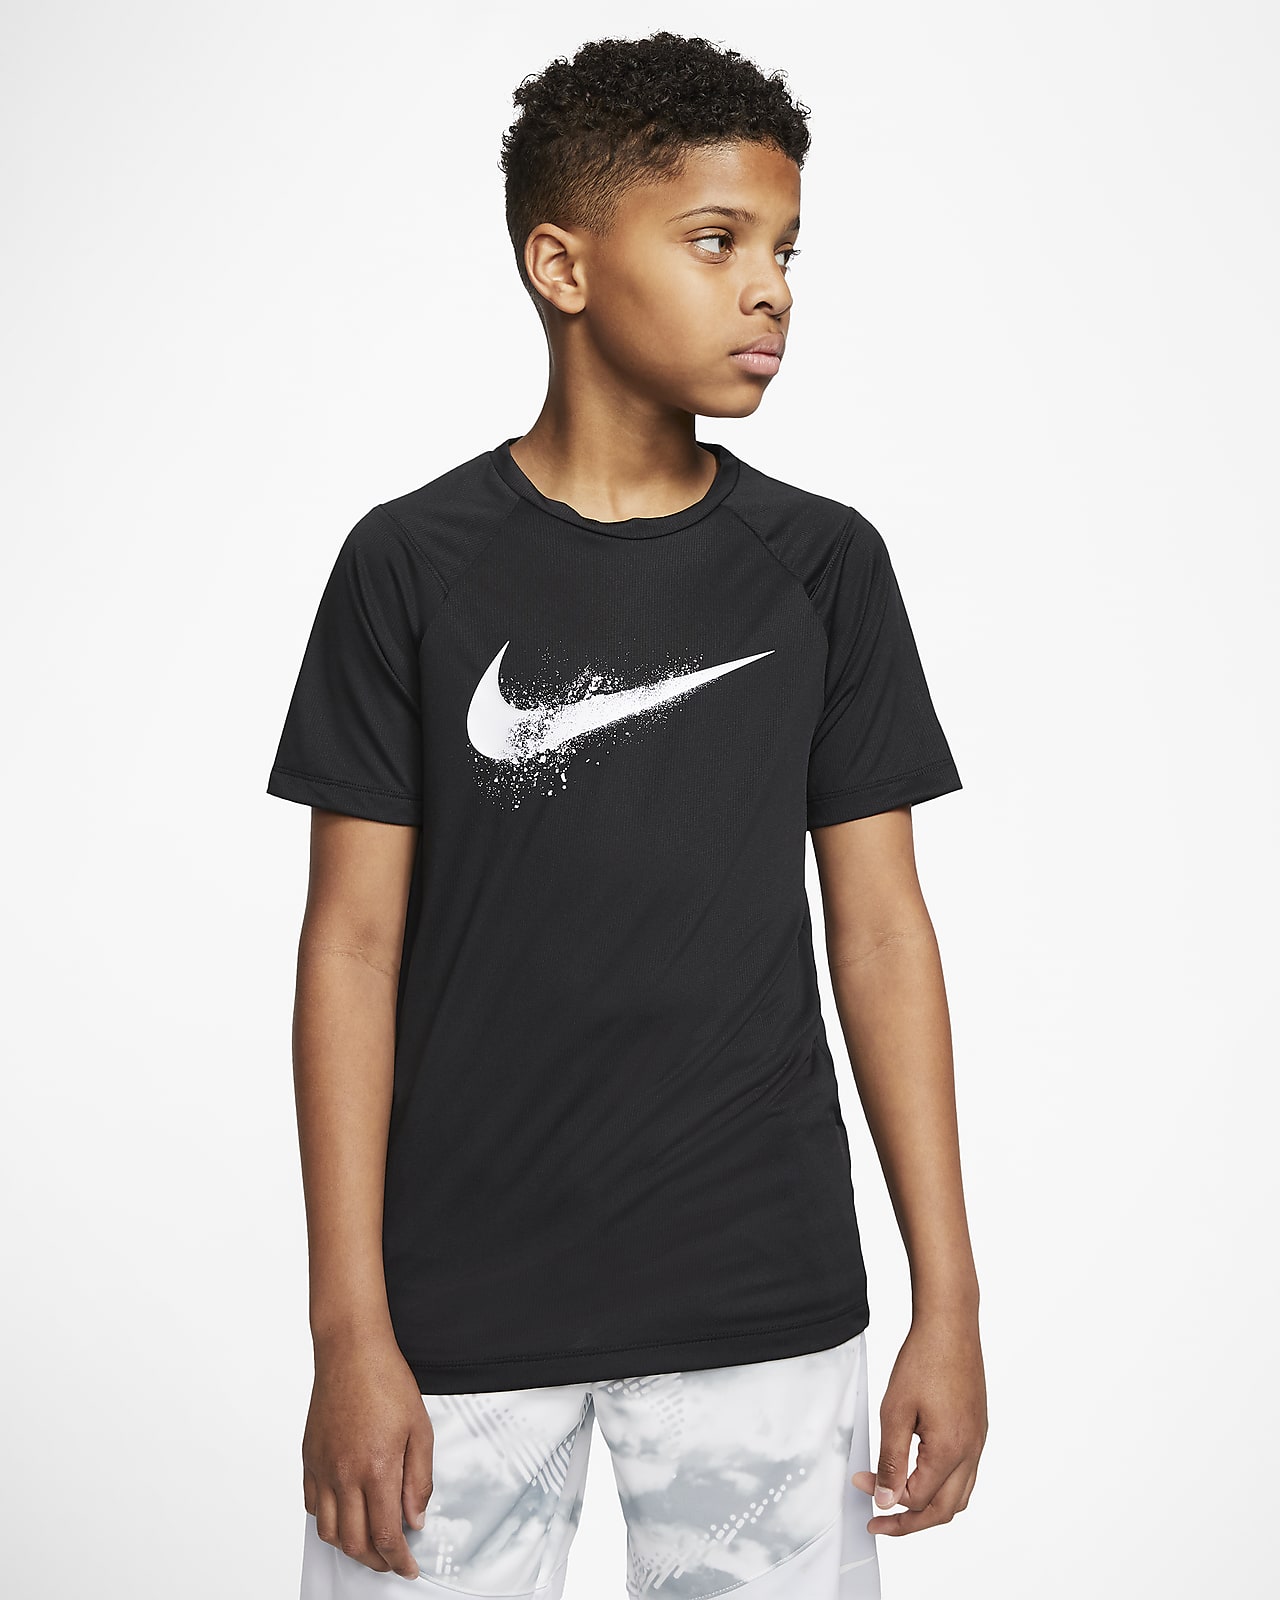 เสื้อเทรนนิ่งแขนสั้นเด็กโตมีกราฟิก Nike (ชาย)